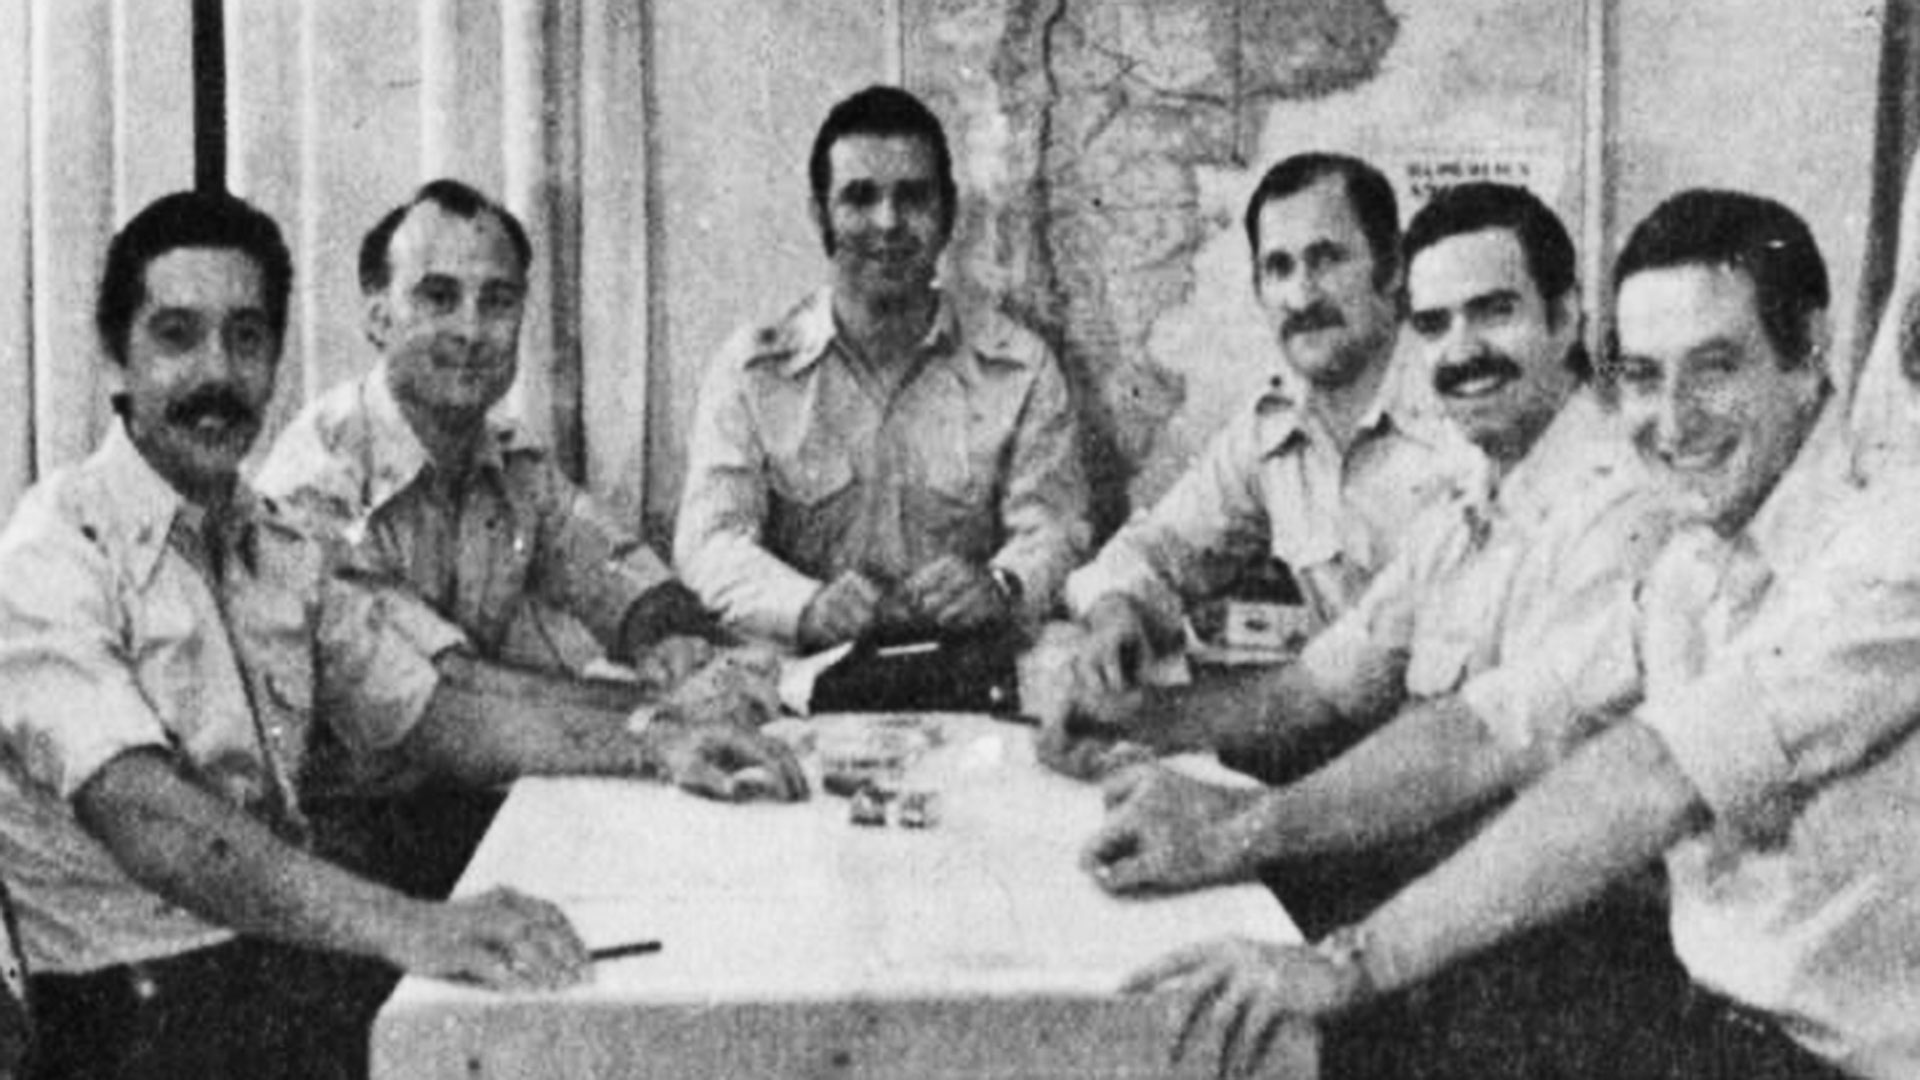 Los jefes de la organización Montoneros. Al centro, Mario Firmenich. Vaca Narvaja, segundo desde la derecha